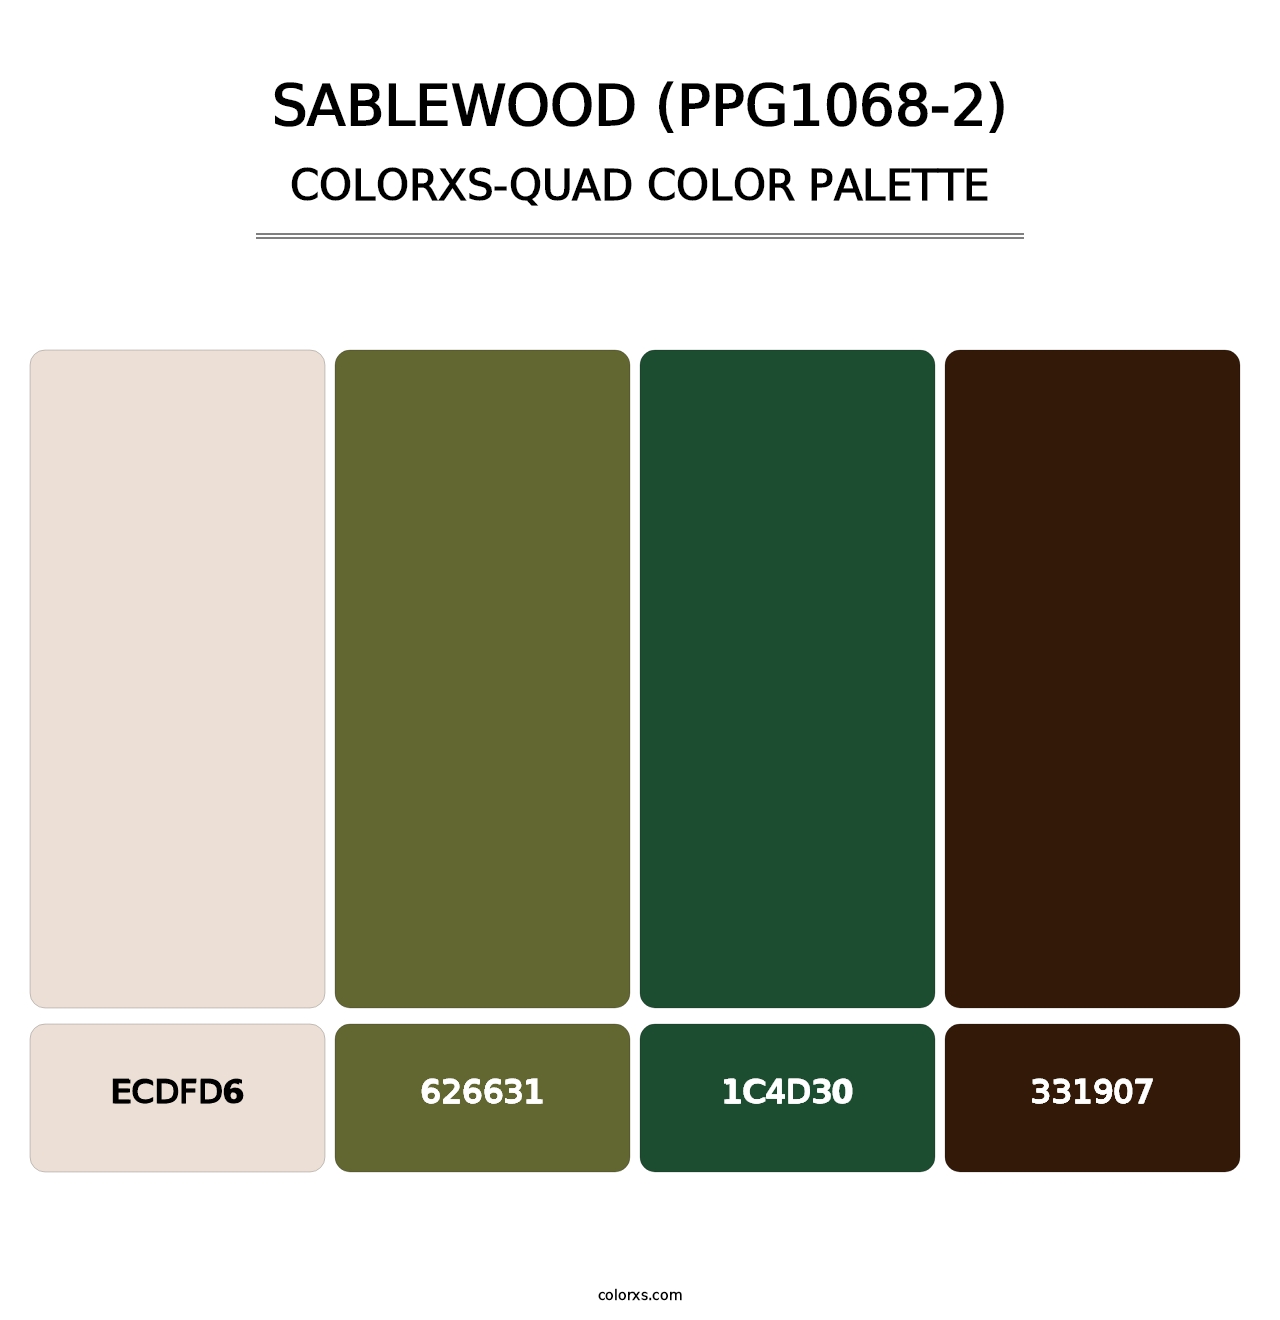 Sablewood (PPG1068-2) - Colorxs Quad Palette